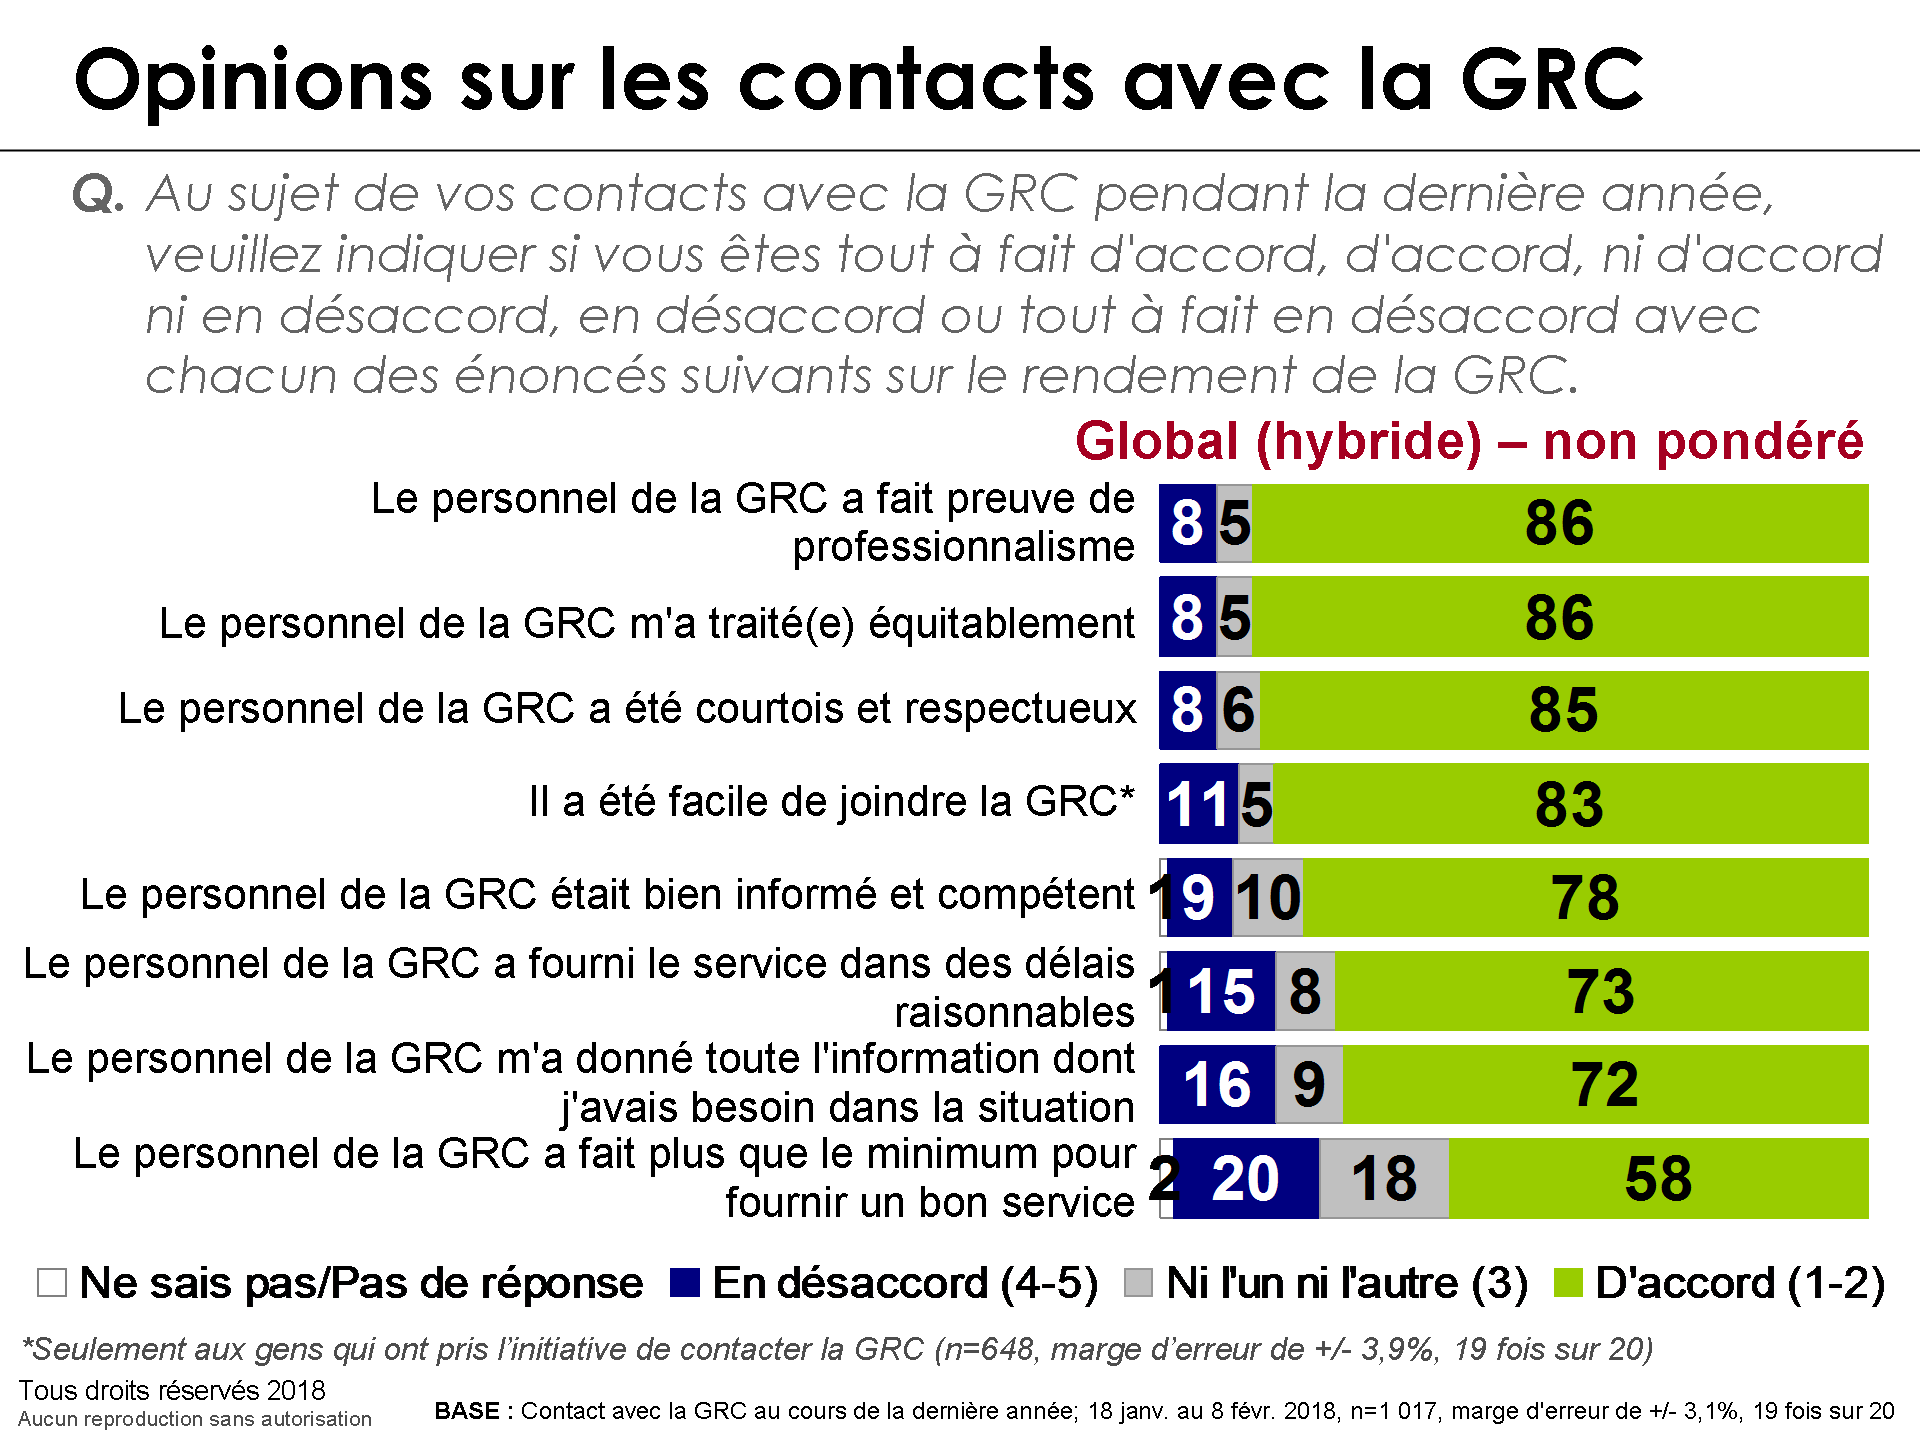 Opinions sur les contacts avec la GRC